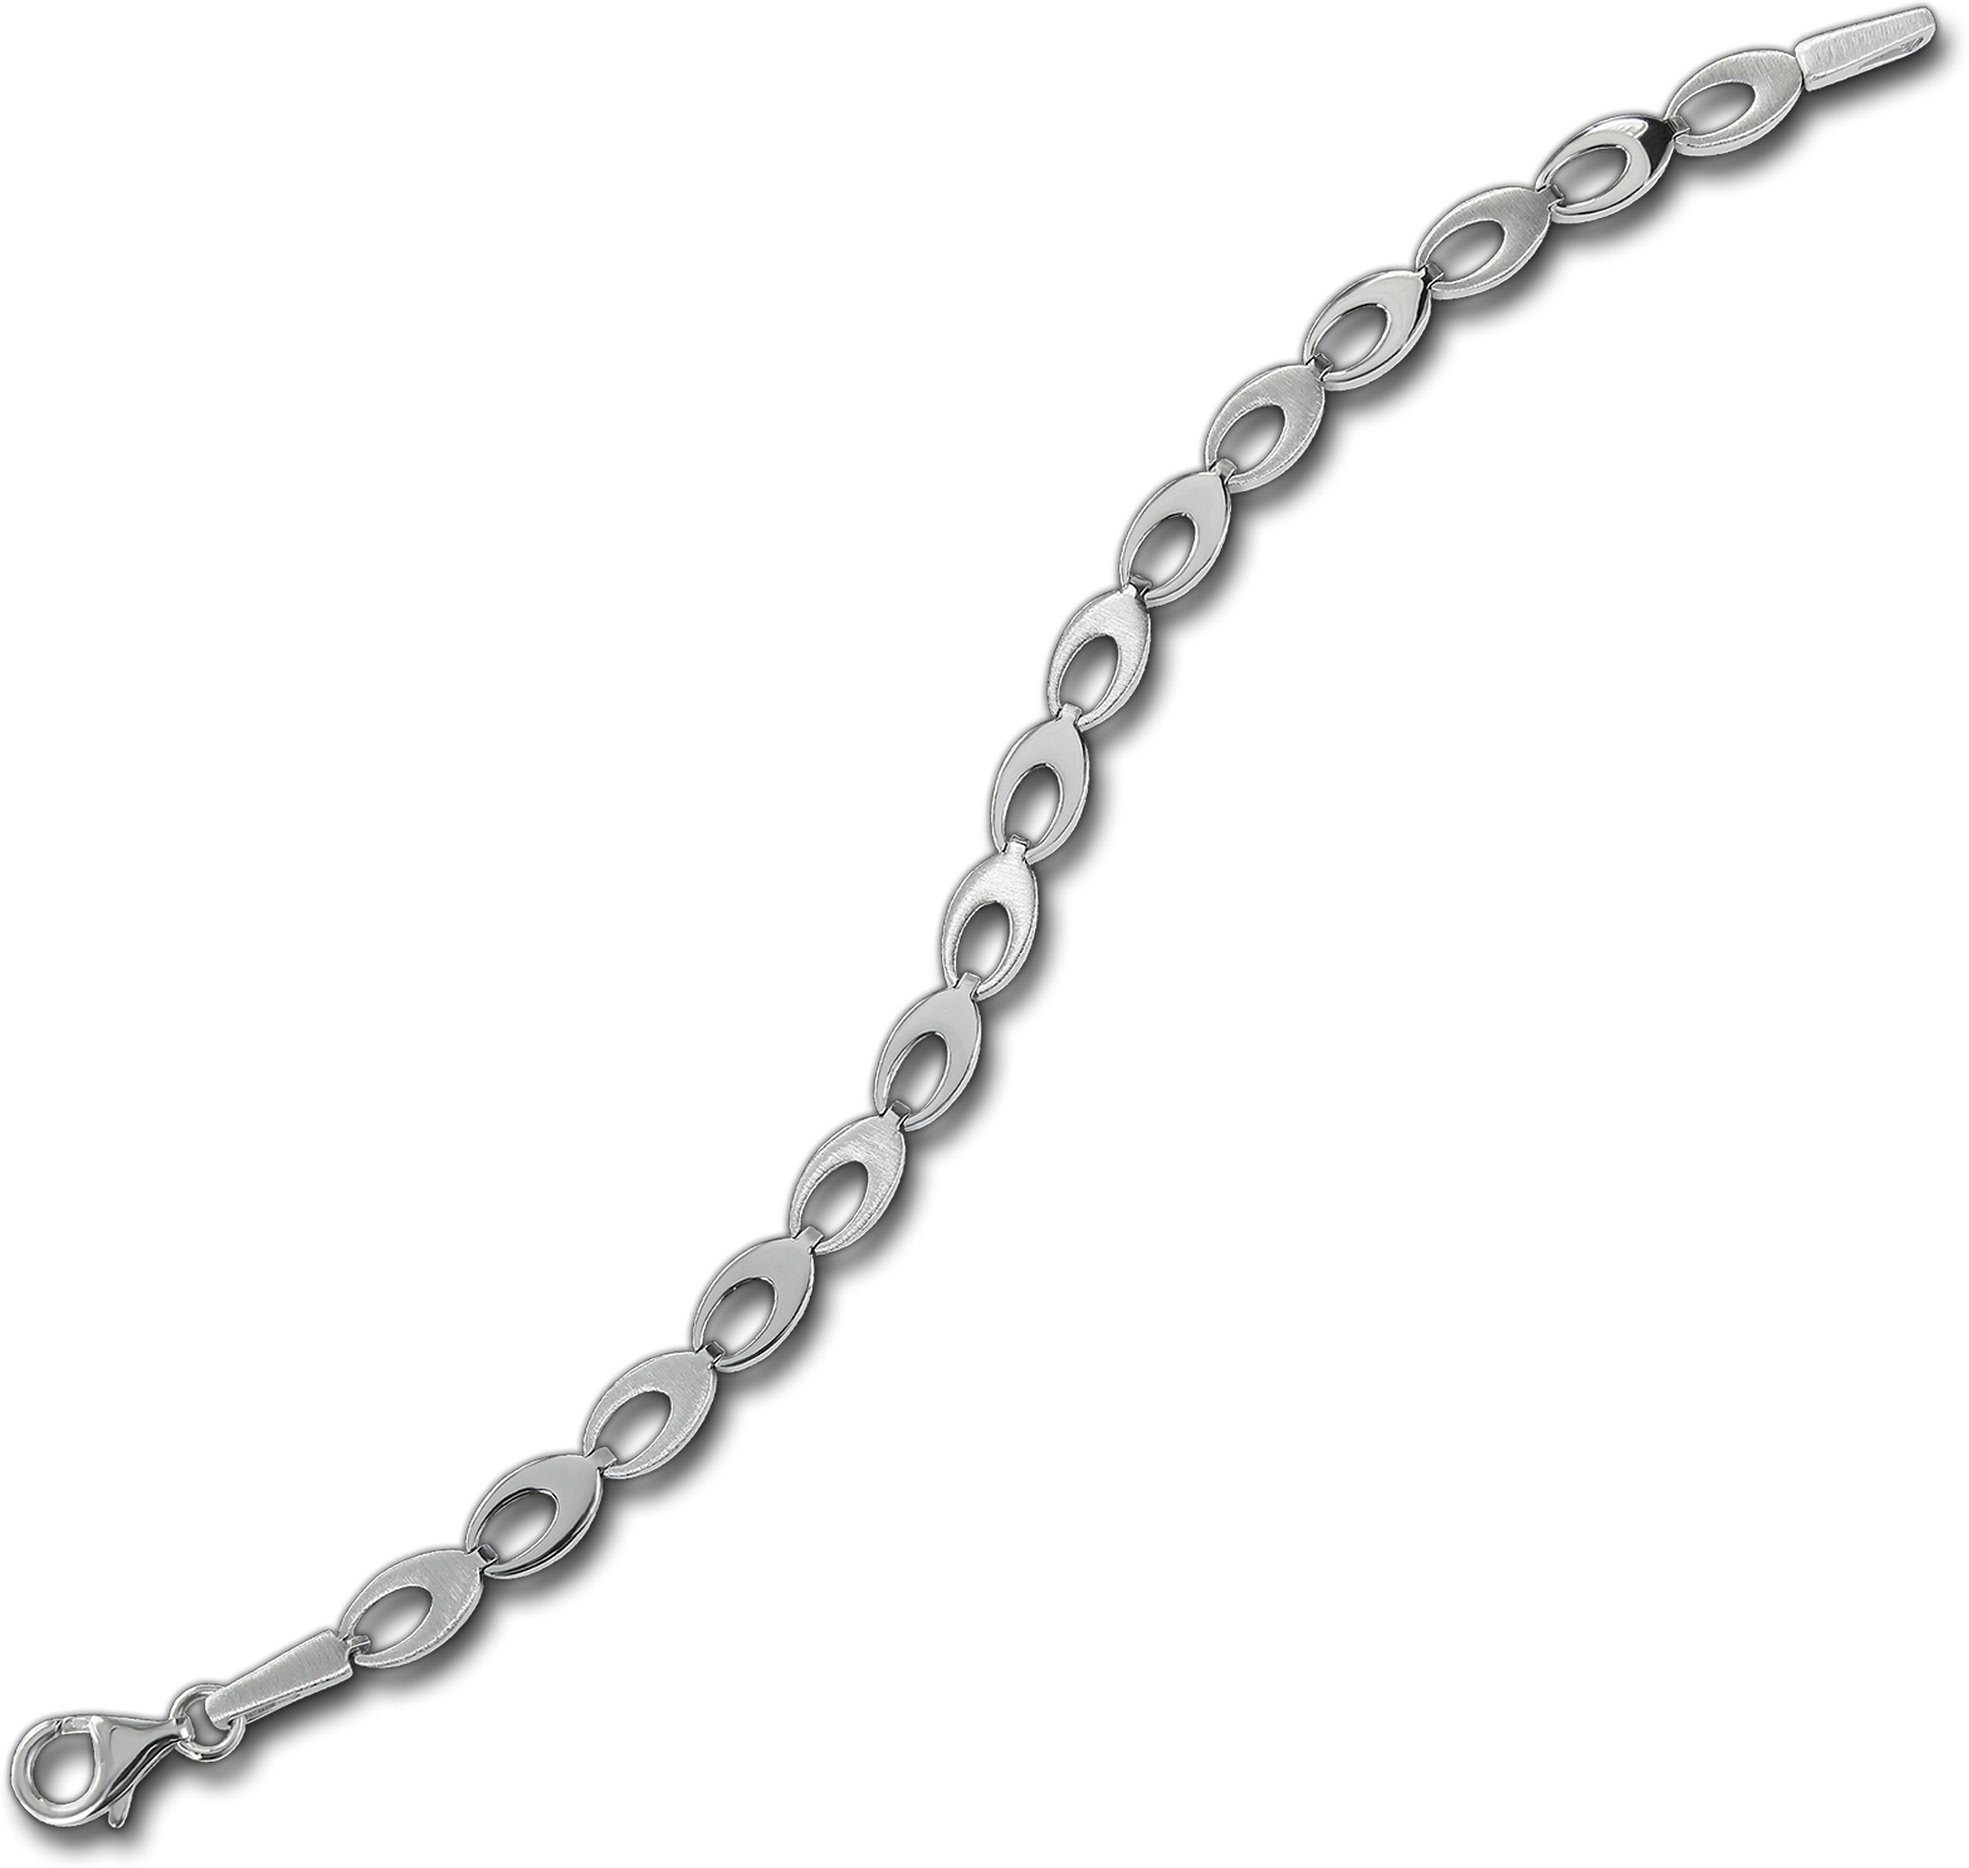 Damen Silber 925 mattiert Balia Silber Armband ca. Balia (Oval) 18,5cm, Silberarmband für Armband (Armband),